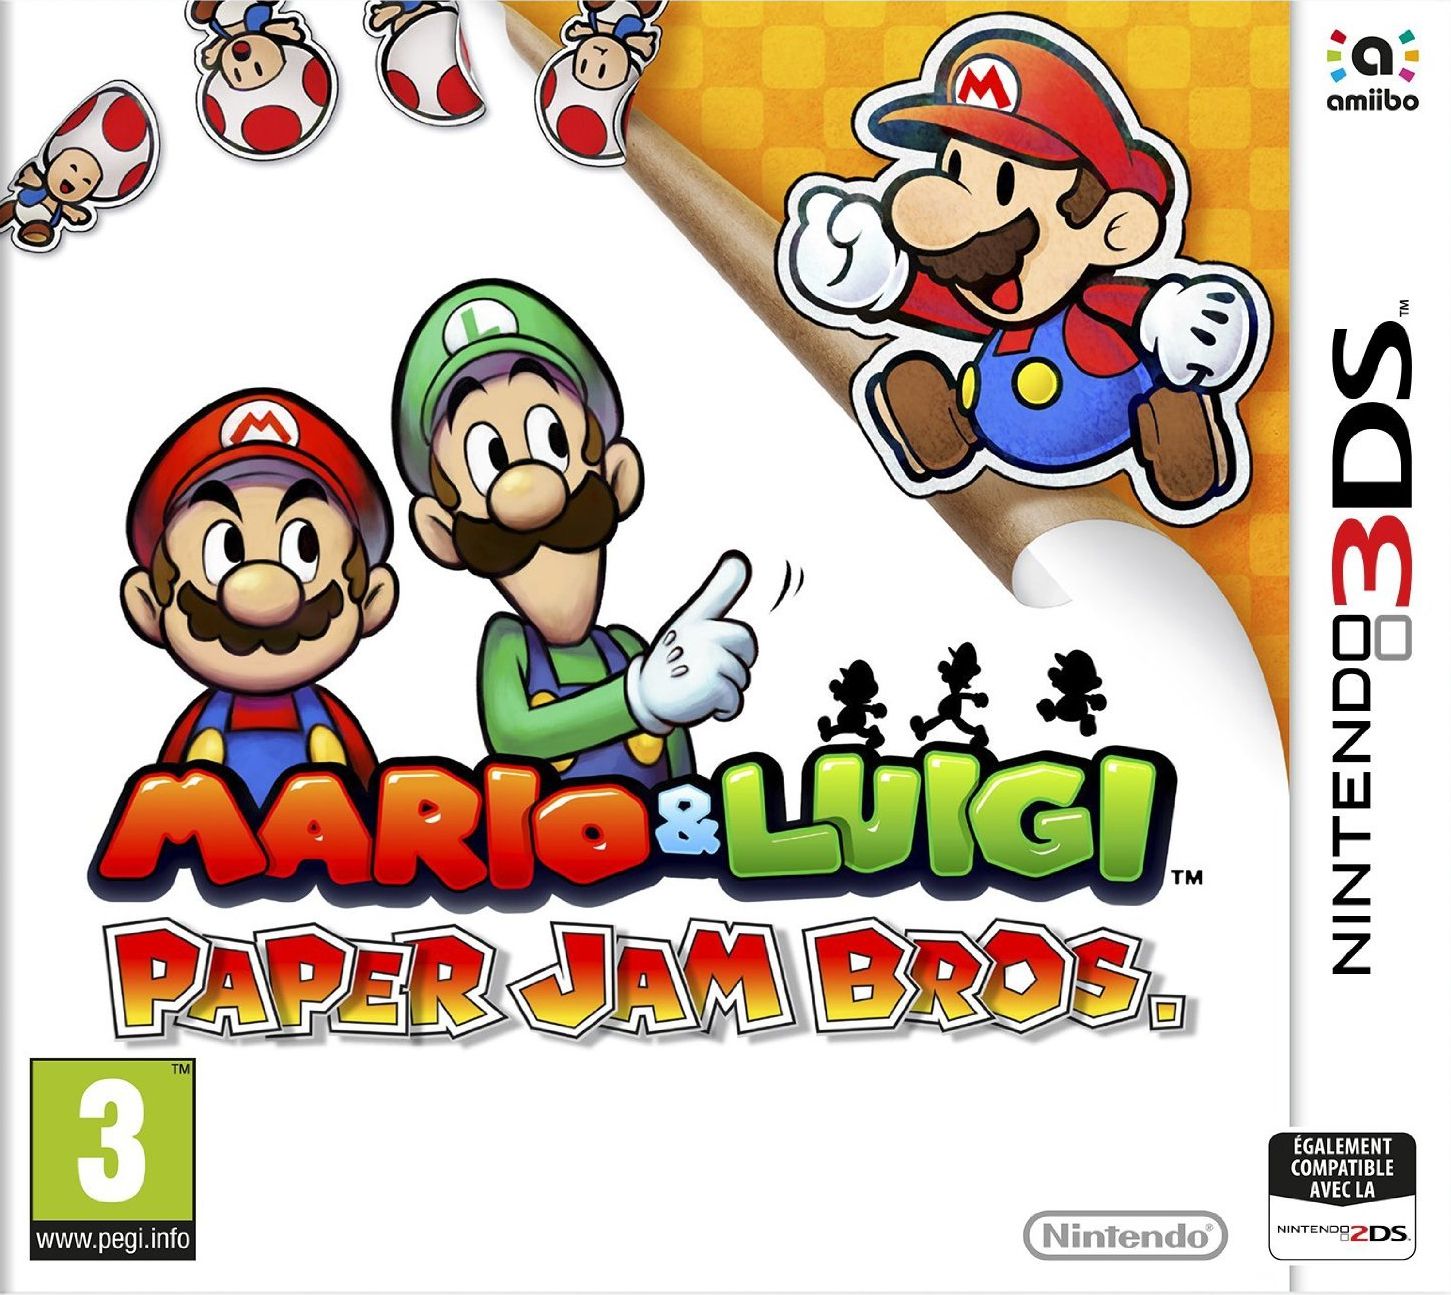 jaquette reduite de Mario & Luigi: Paper Jam Bros. sur 3DS